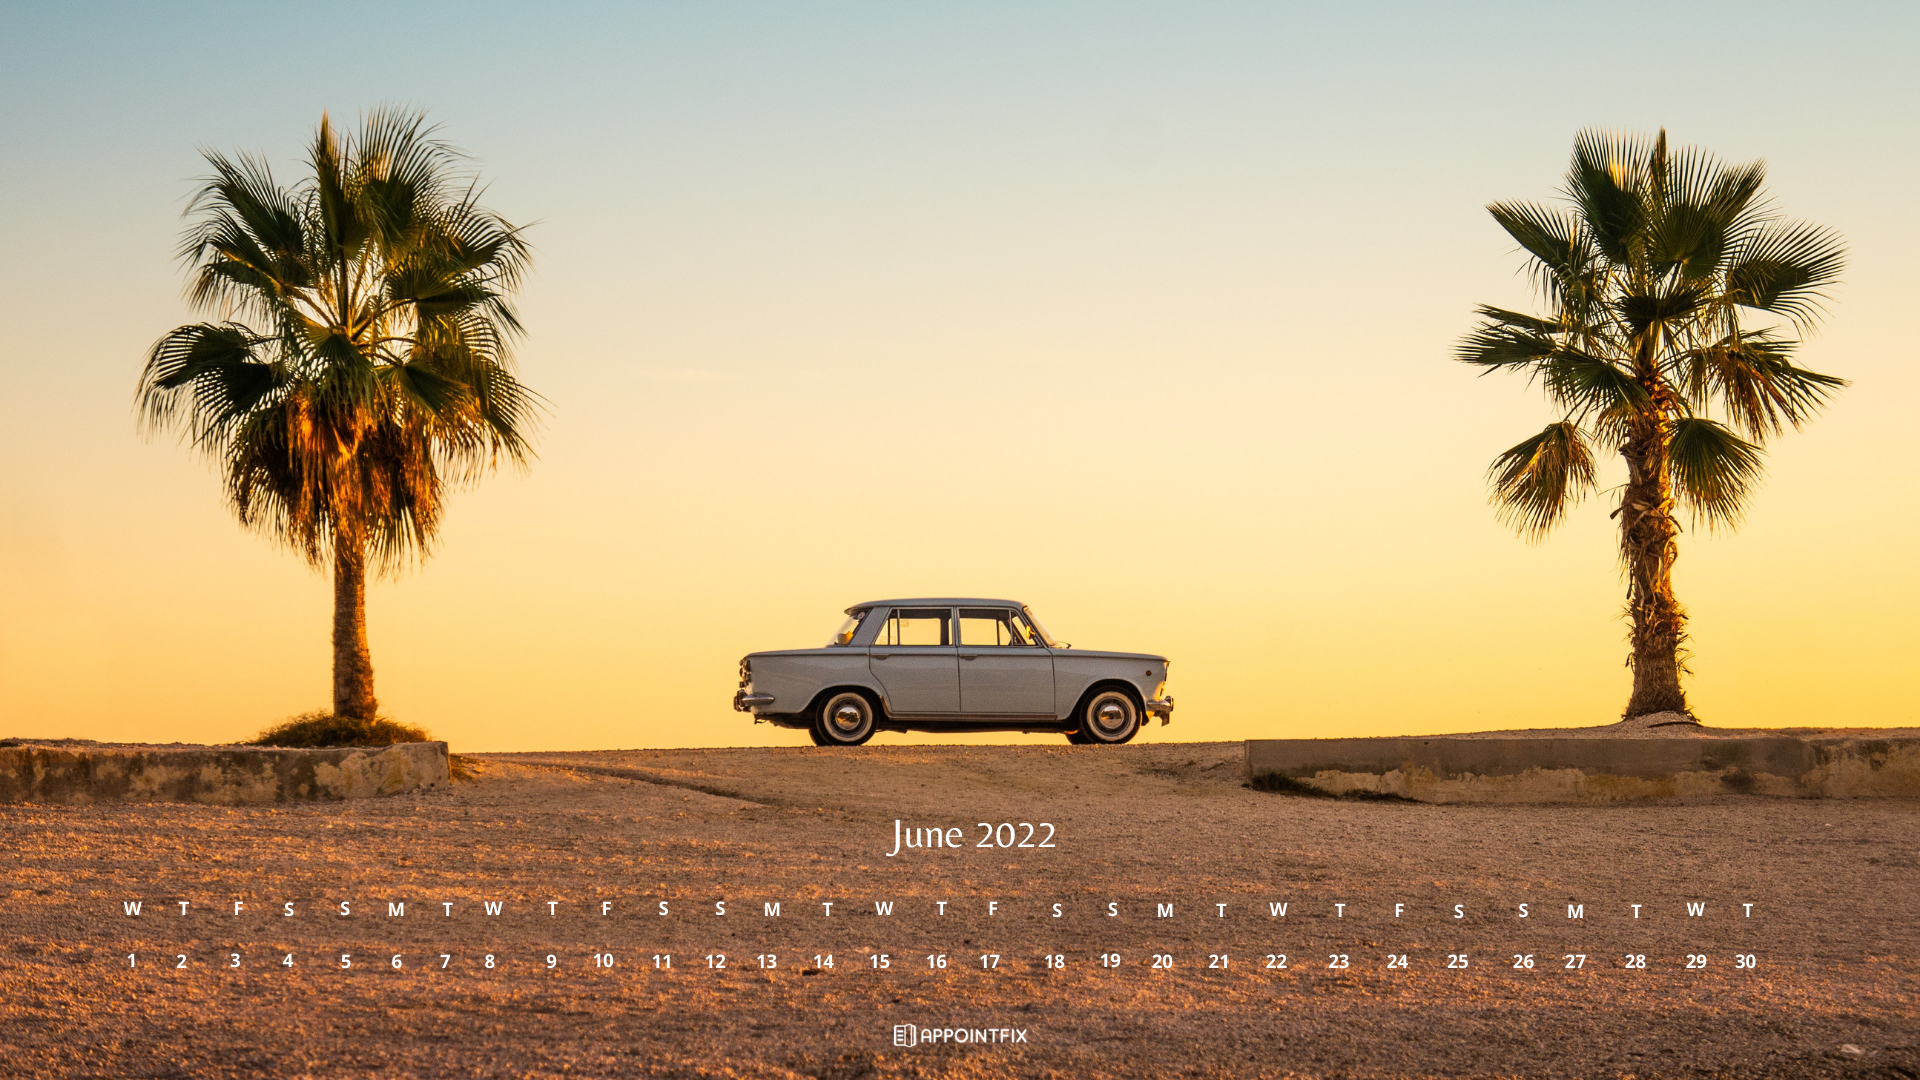 Free June 2022 Calendar Wallpapers – Desktop & Mobile